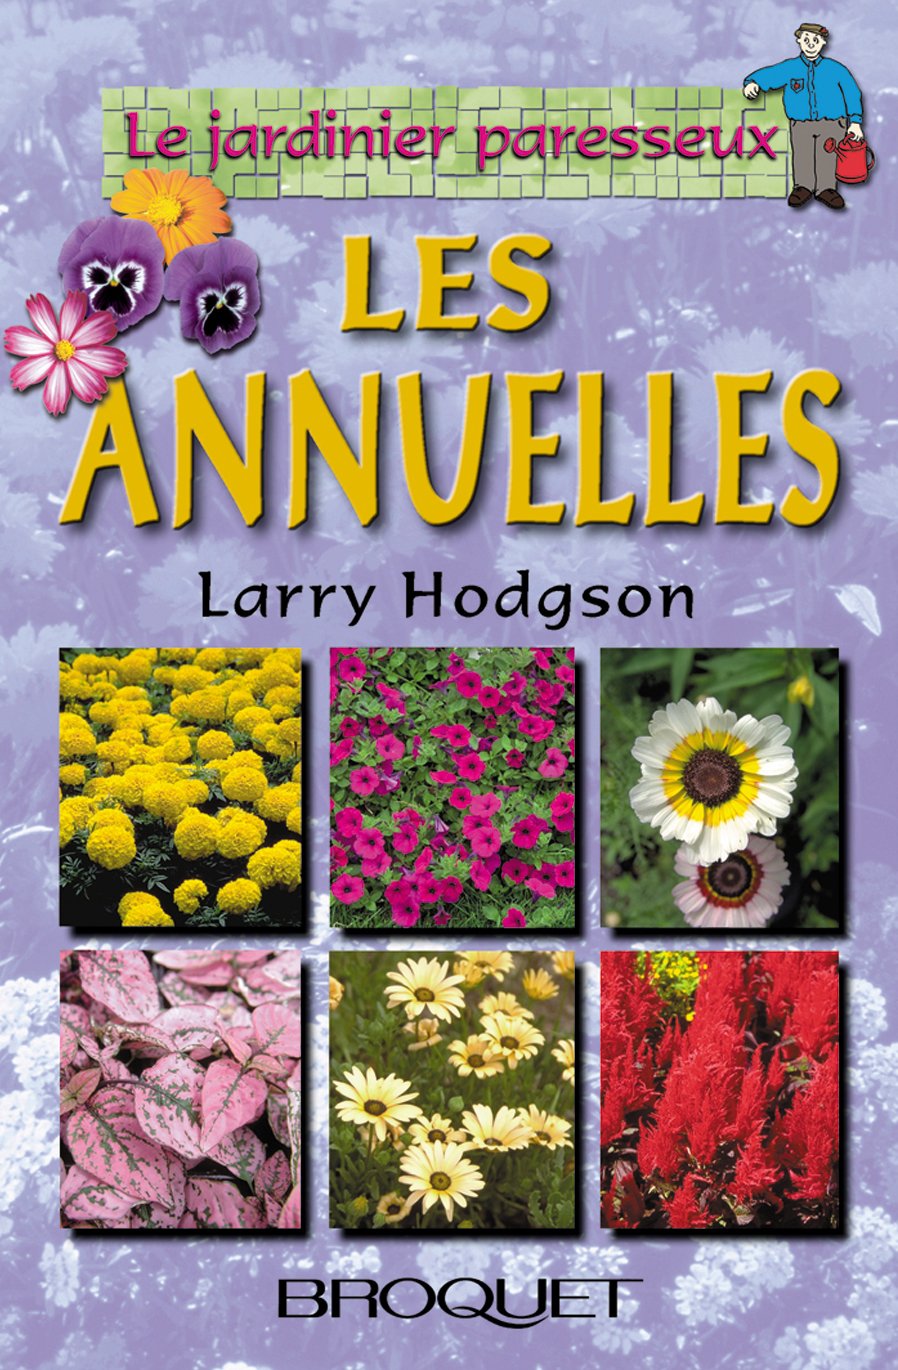 Le jardinier paresseux : Les annuelles - Larry Hodgson